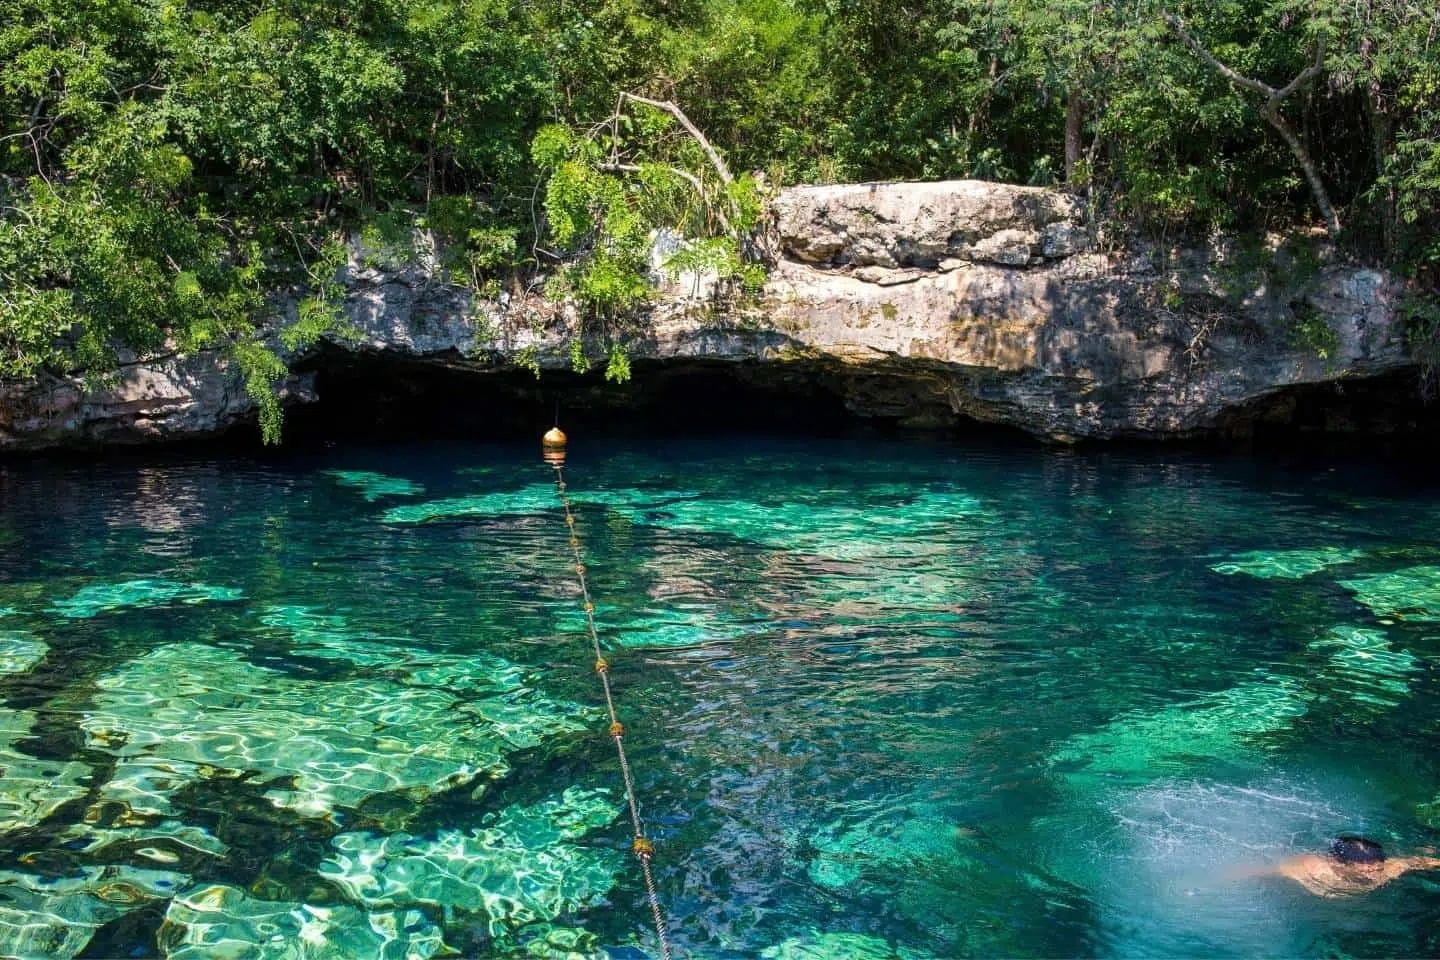 Swimming in Cenote Azul